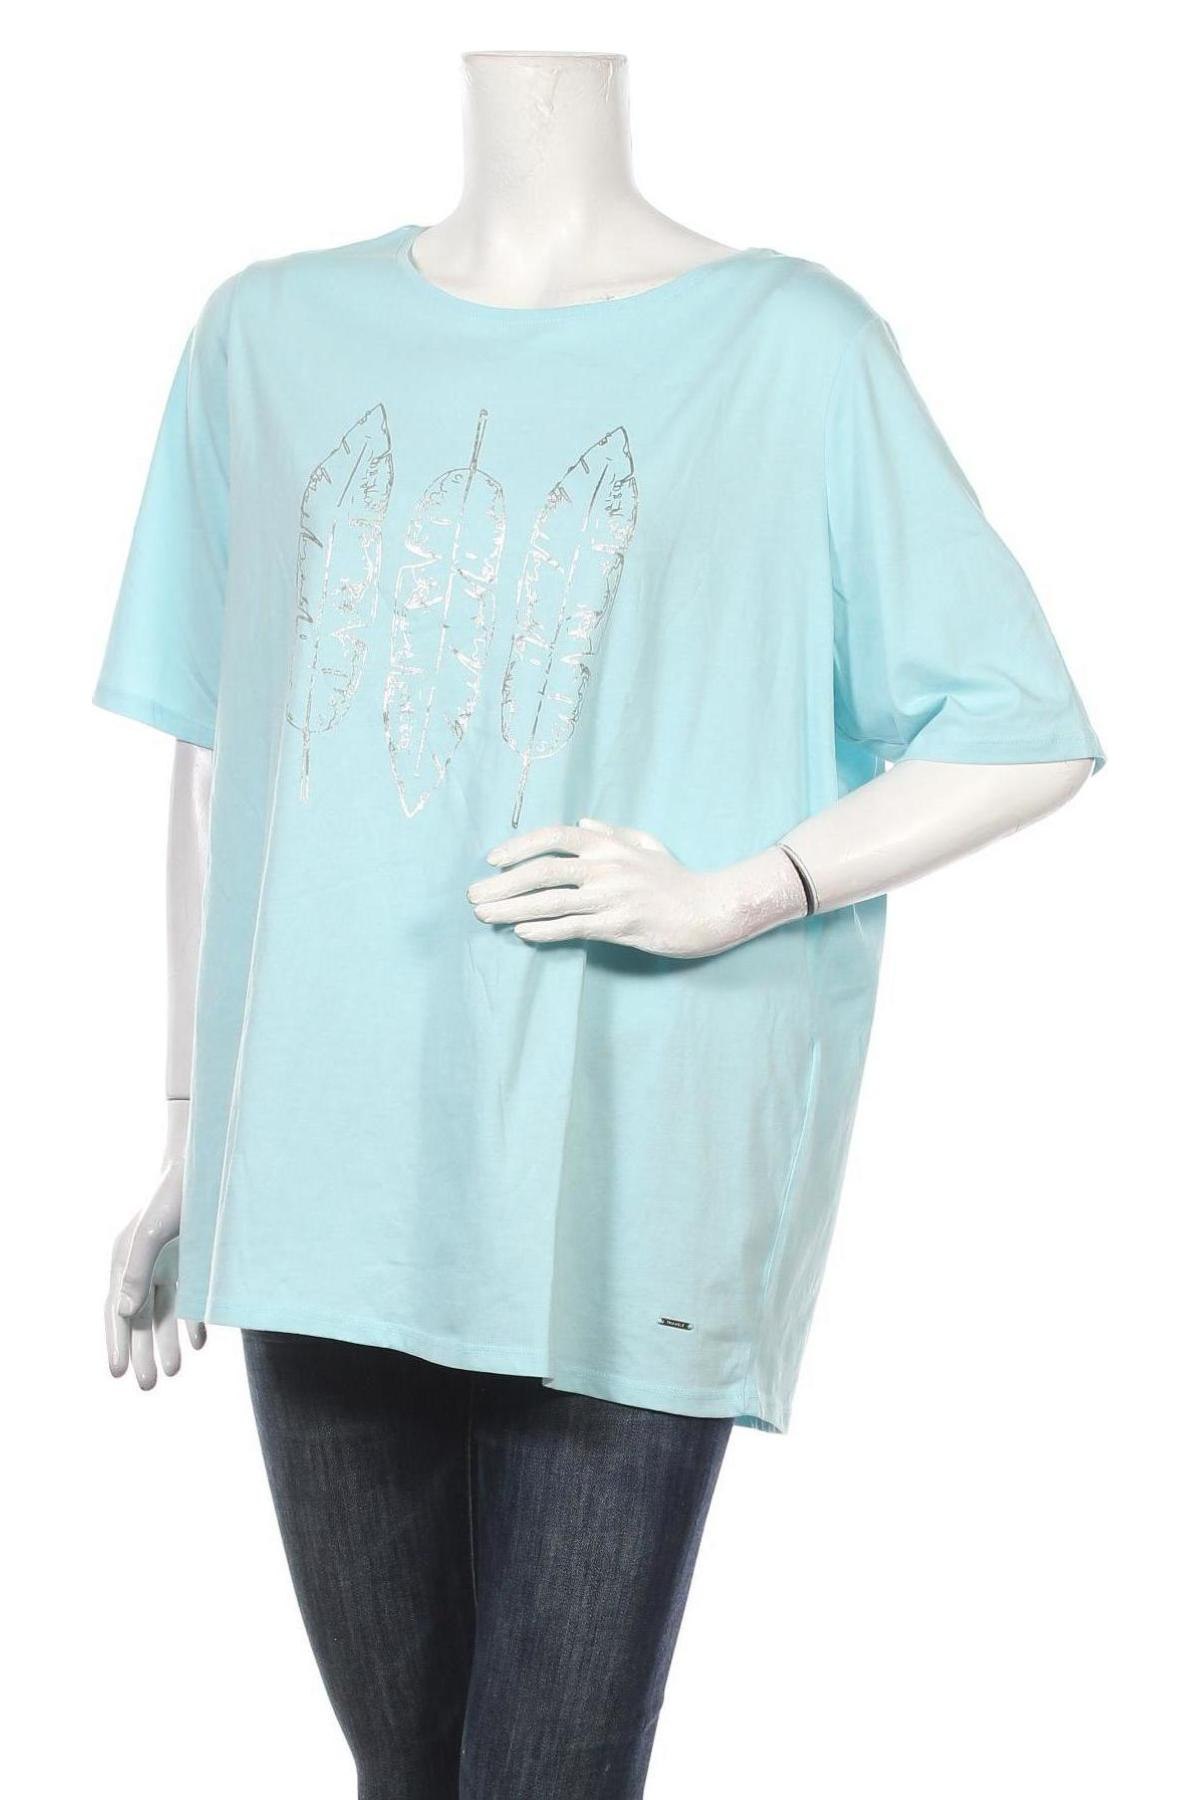 Dámské tričko Triangle By s.Oliver, Velikost 3XL, Barva Modrá, 52% bavlna, 48% polyester, Cena  641,00 Kč